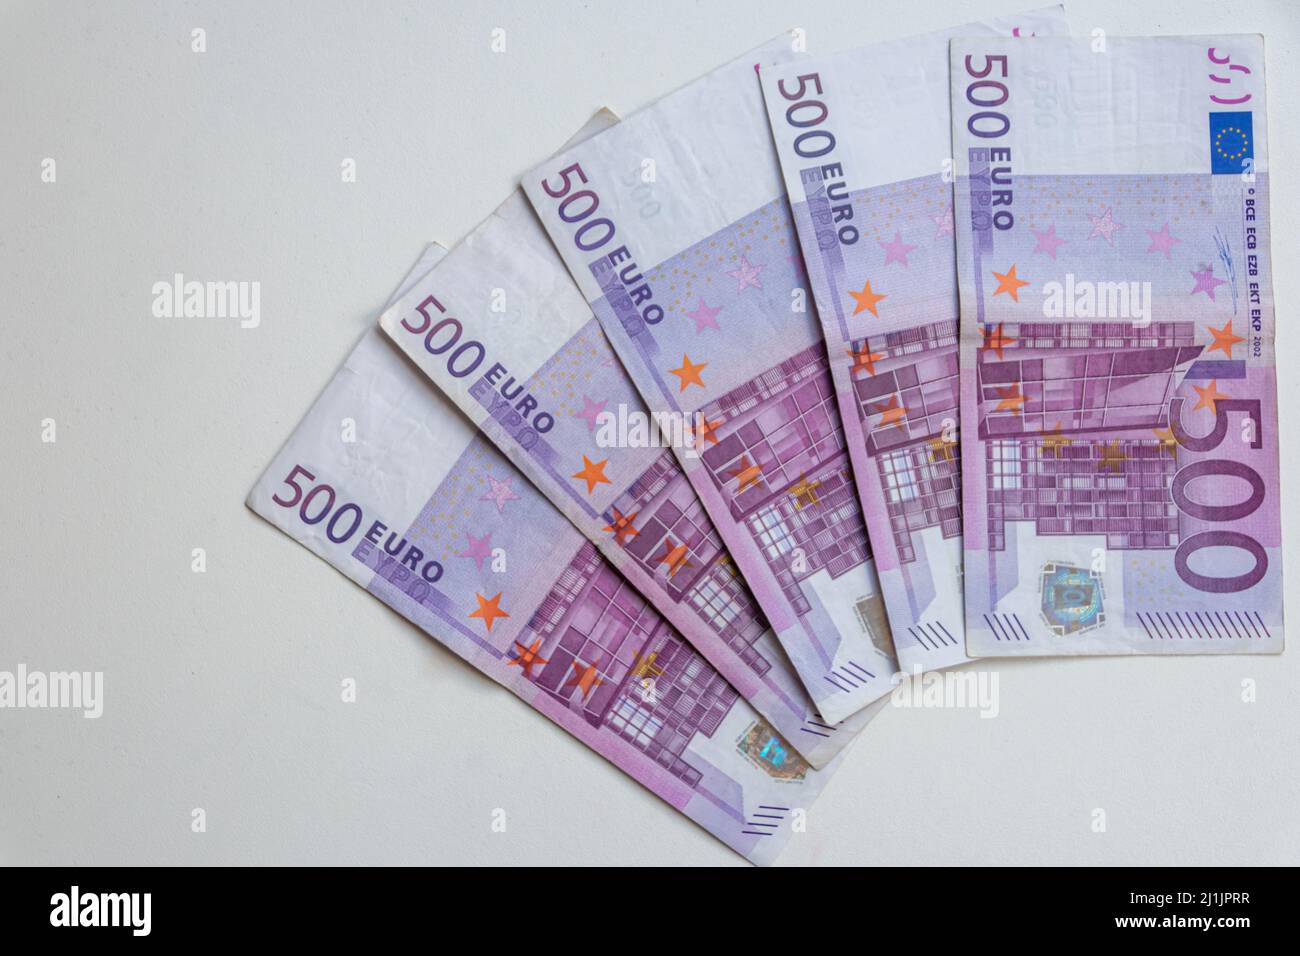 Lot de billets de banque européens de 500 euros pour le financement international de la foule ou la transaction financière pour montrer l'euro du commerce international et du marché financier Banque D'Images